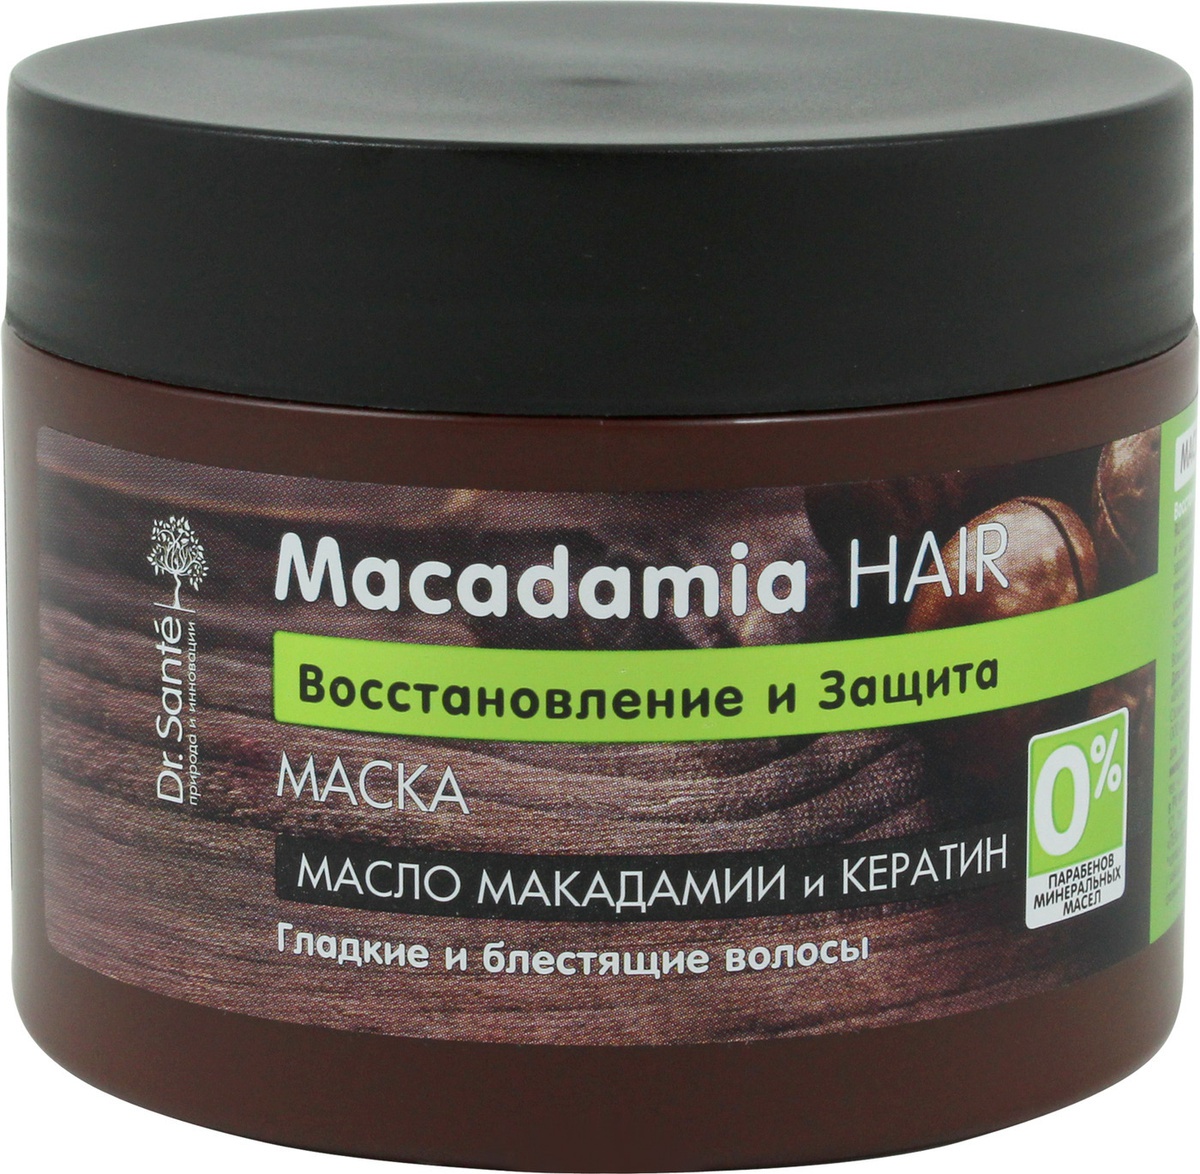 Dr. Santé Macadamia Hair Маска Для Ослабленных Волос Восстановление И Защита С Маслом Макадамии И Кератином